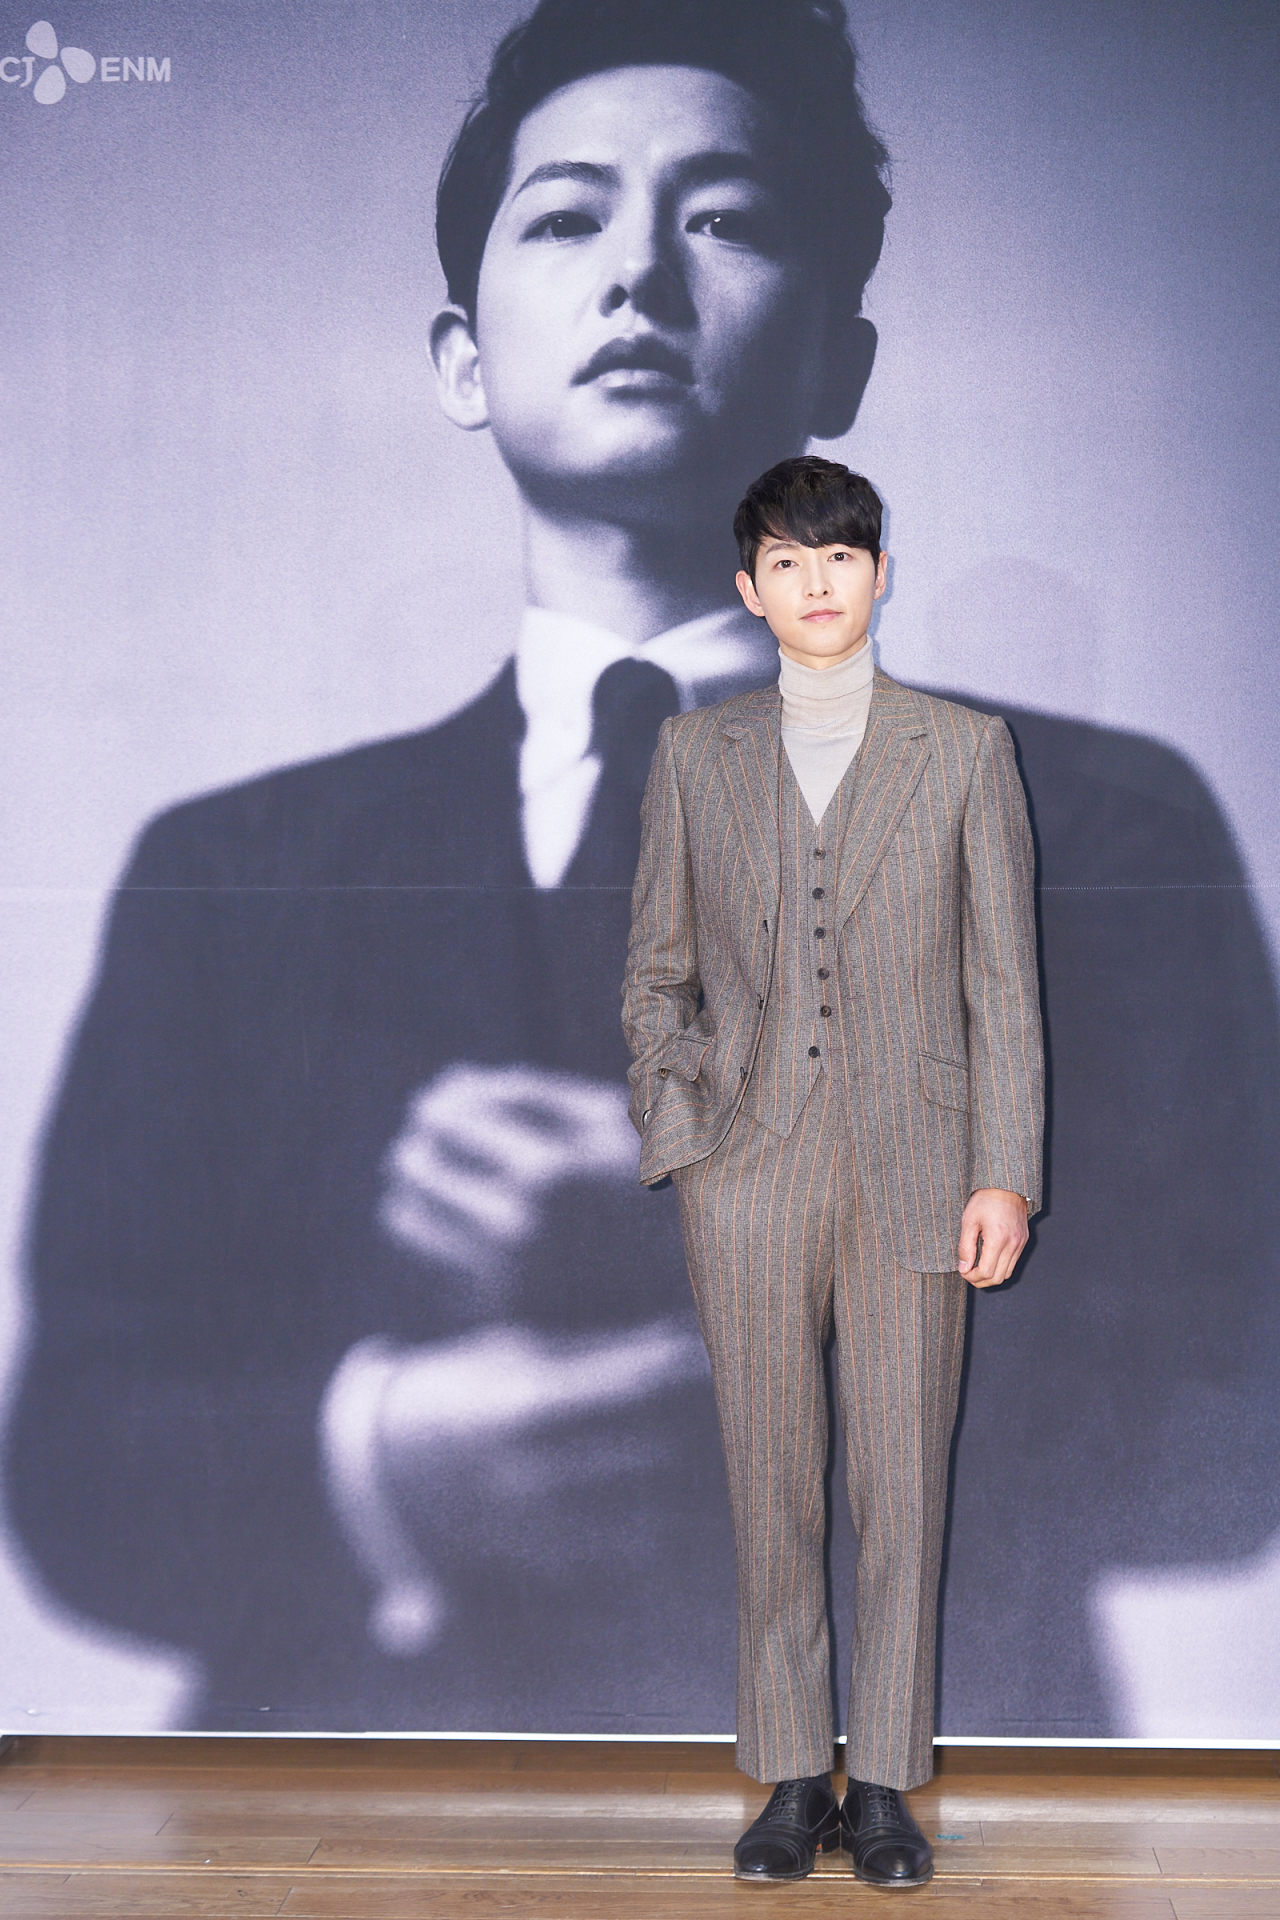 Actor Song Joong-ki (CJ ENM)